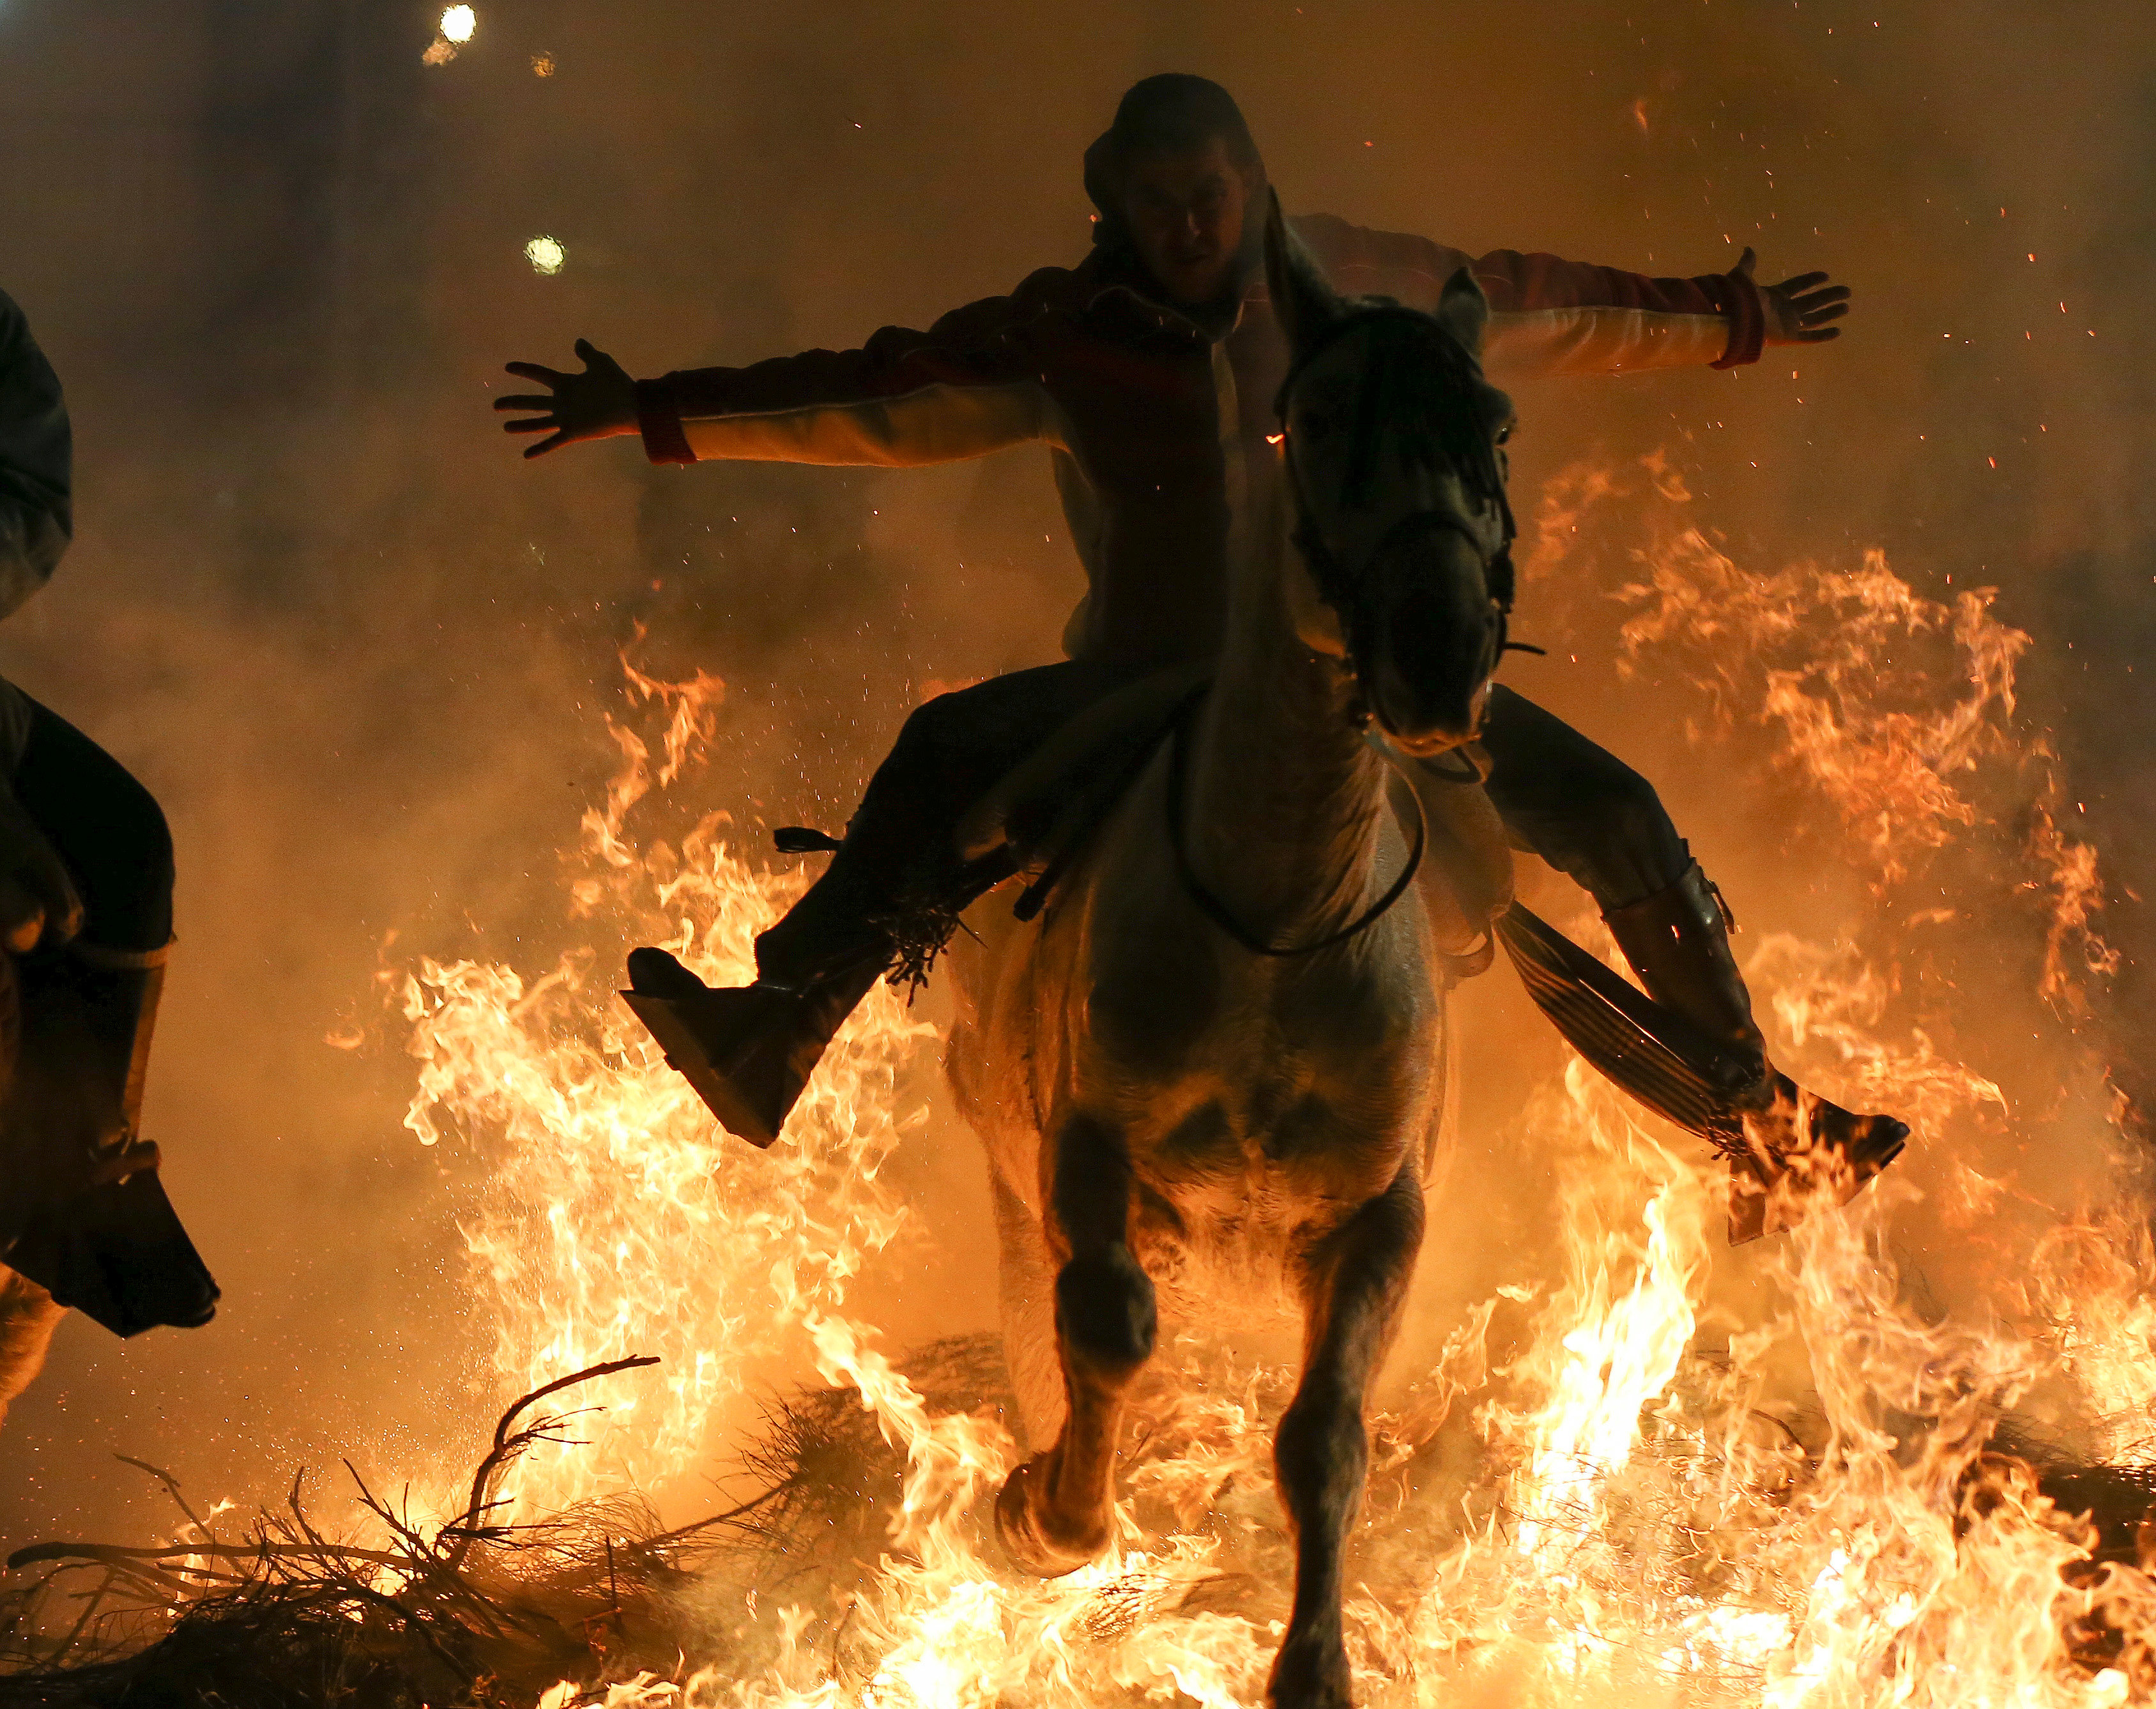 الخيل فى النار مهرجان إسبانى منذ 500 عام لتجنيب حيواناتهم الأمراض